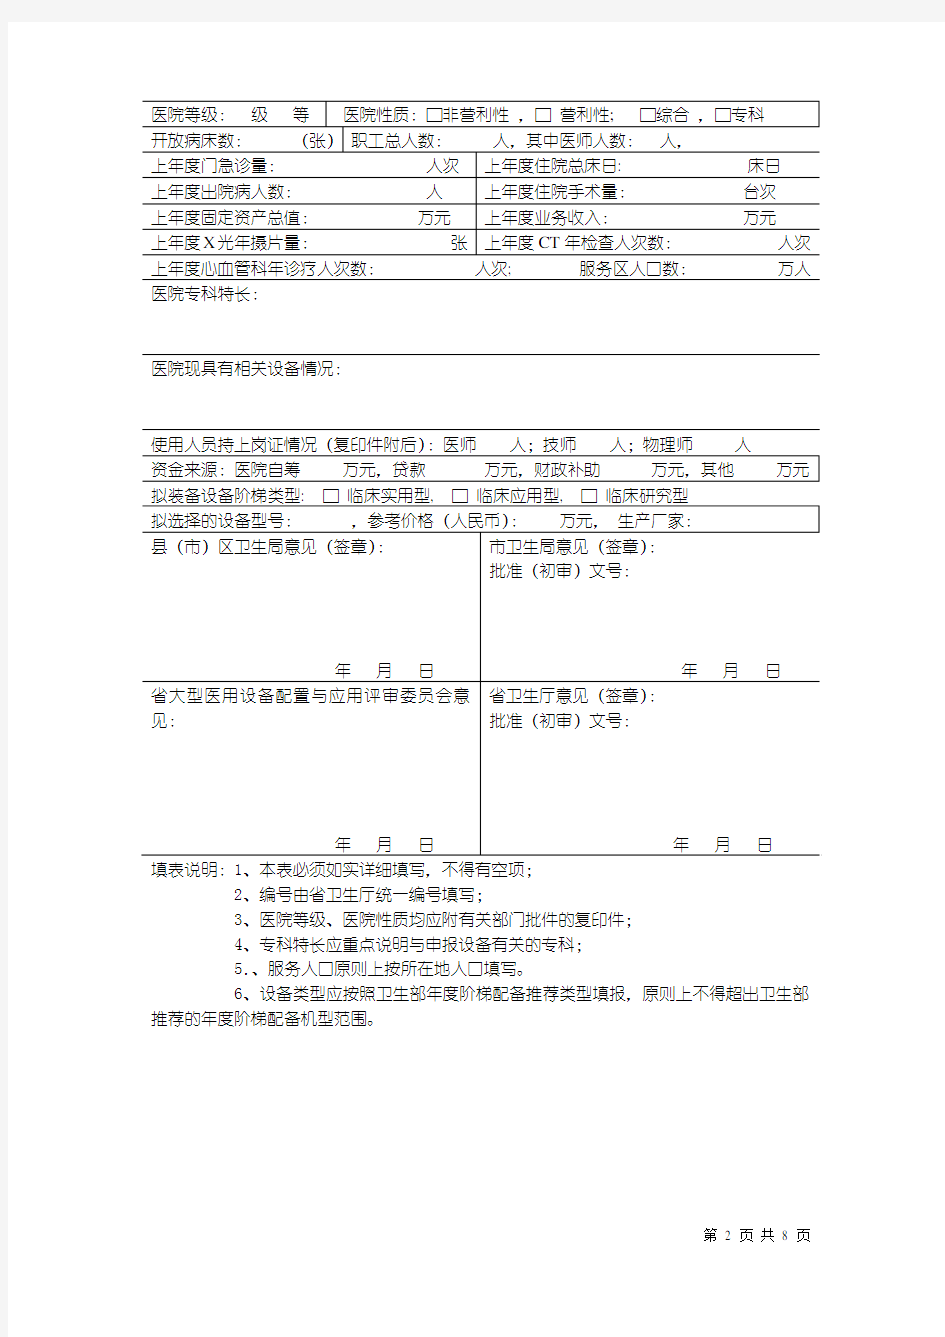 山东省大型医用设备配置(新增)申请表